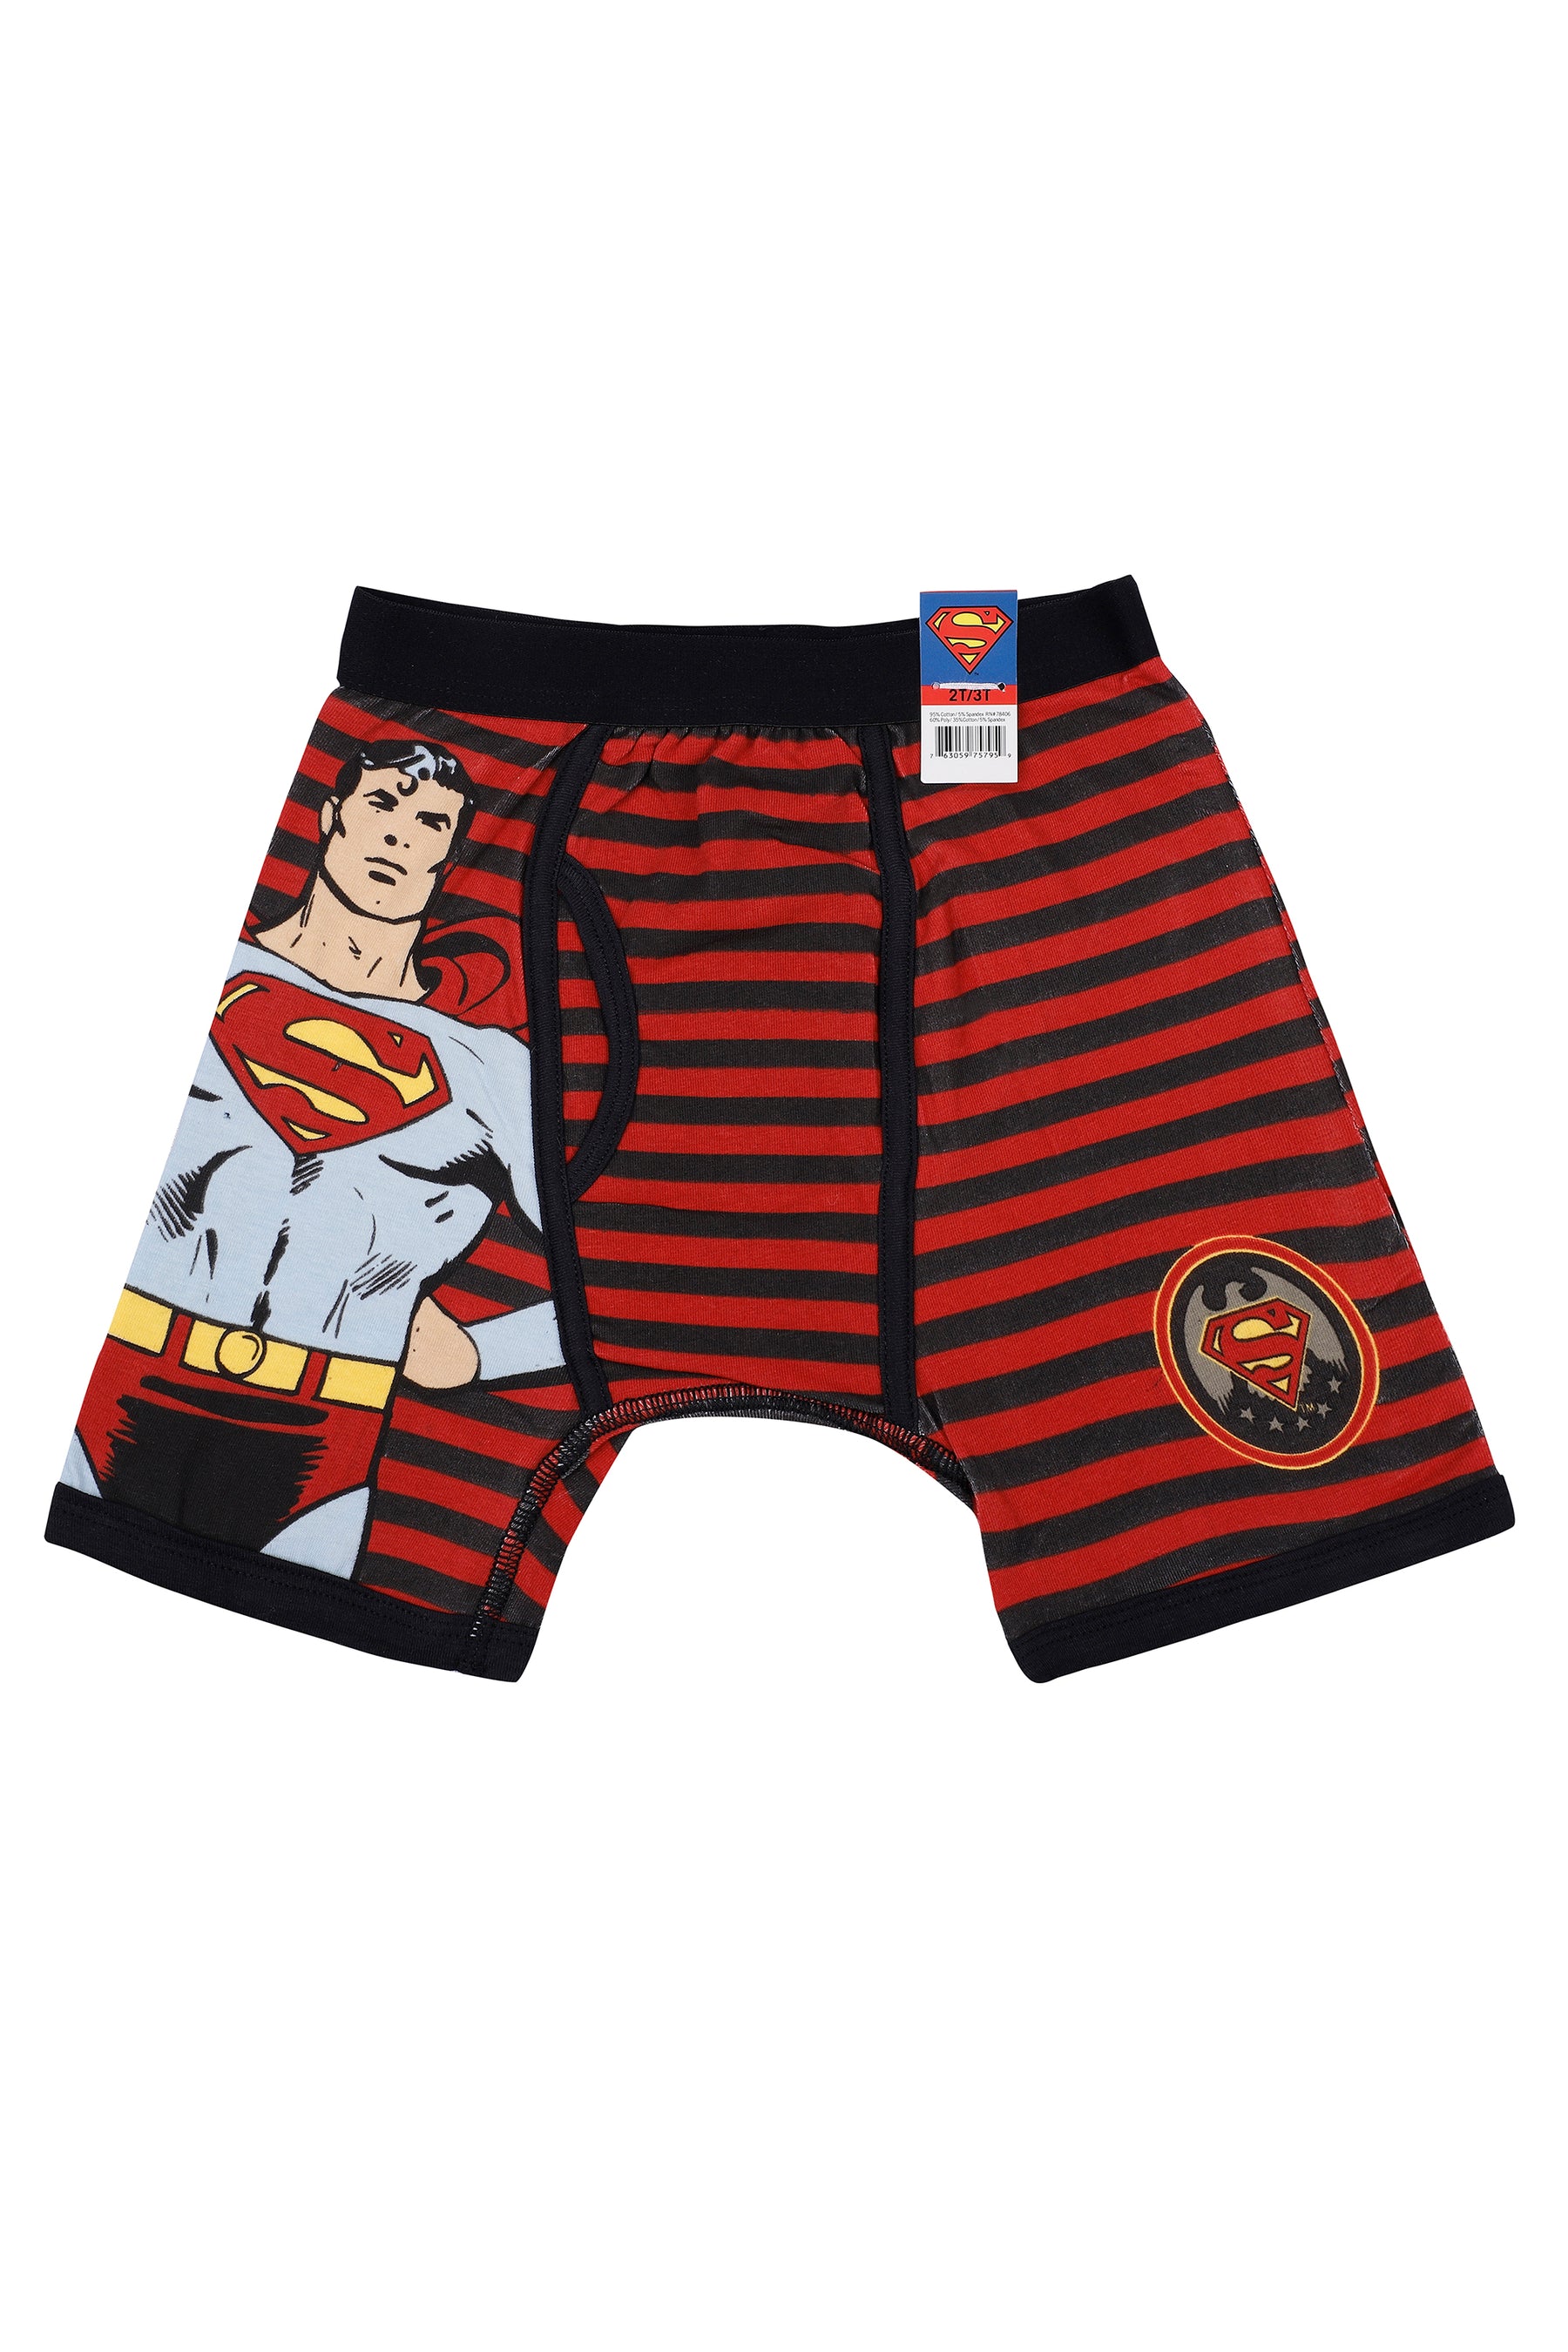 DC Comics Boys' Superhero Boxer Briefs Multipacks with Batman, Flash,  Superman & More, Sizes 4, 6, 8, 10, 12, Jlathleticbxrbr4pk, 4 : :  Clothing, Shoes & Accessories